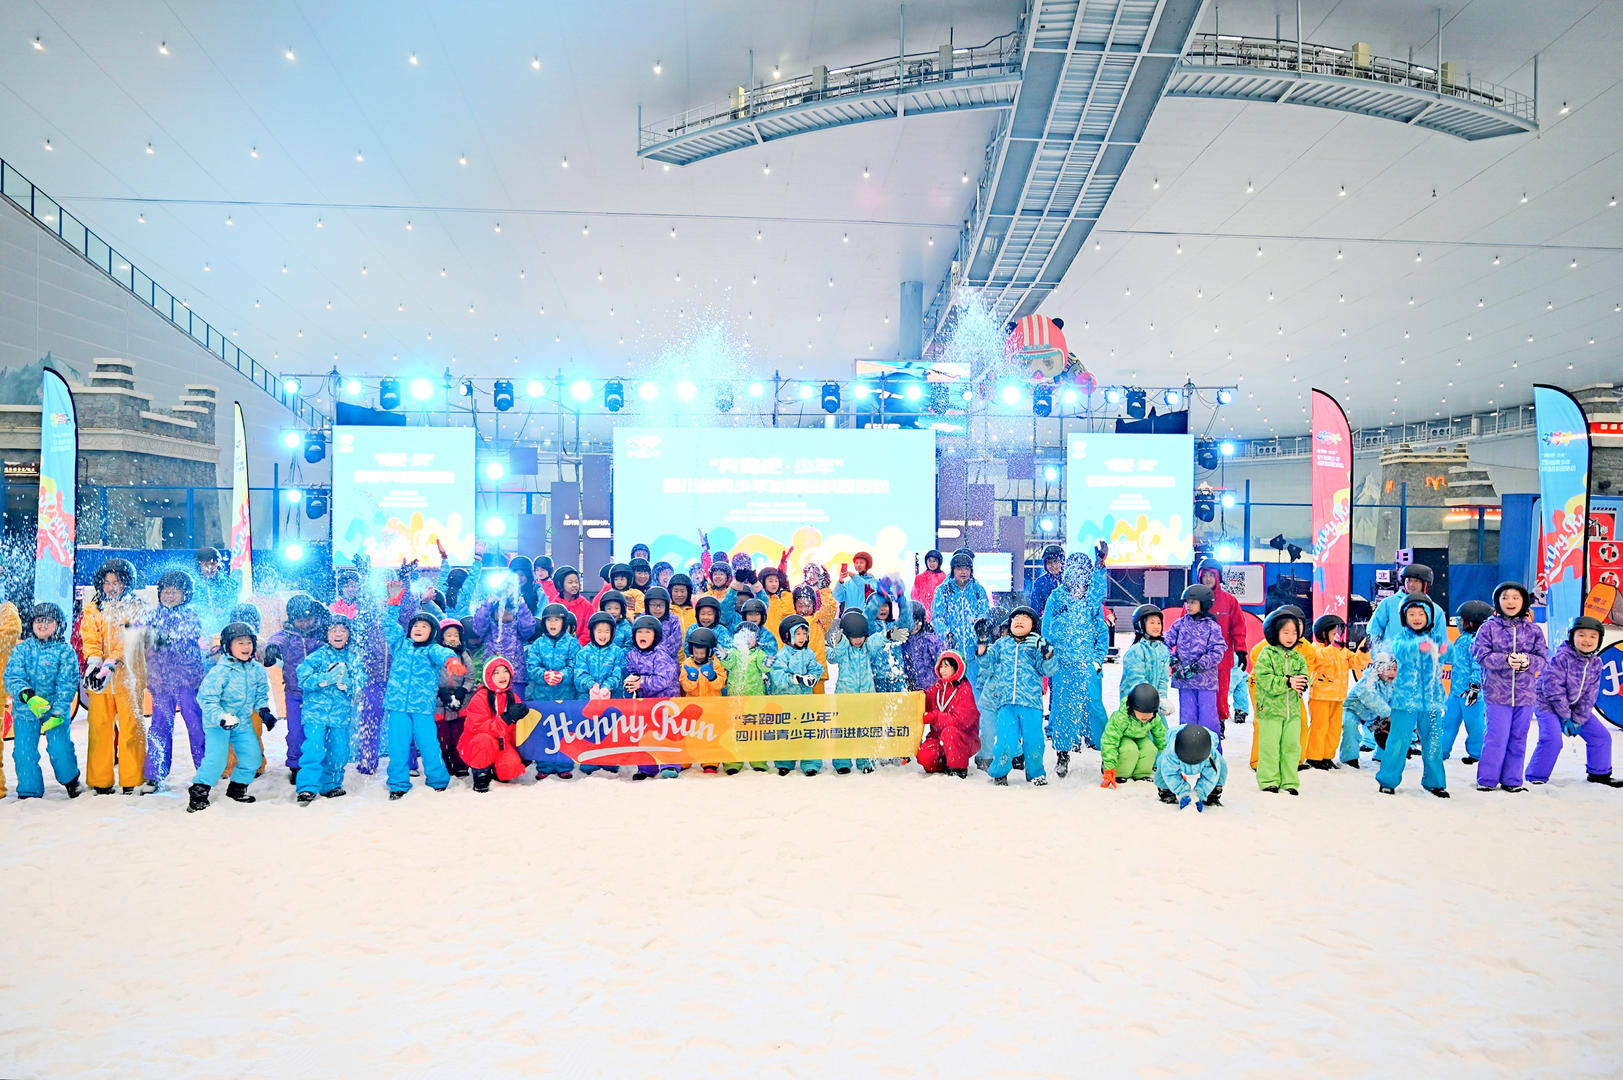 （四川省冰雪运动协会）滑雪、足球正式雪上拔河、青少启动雪上足球……四川省青少年冰雪进校园活动正式启动插图